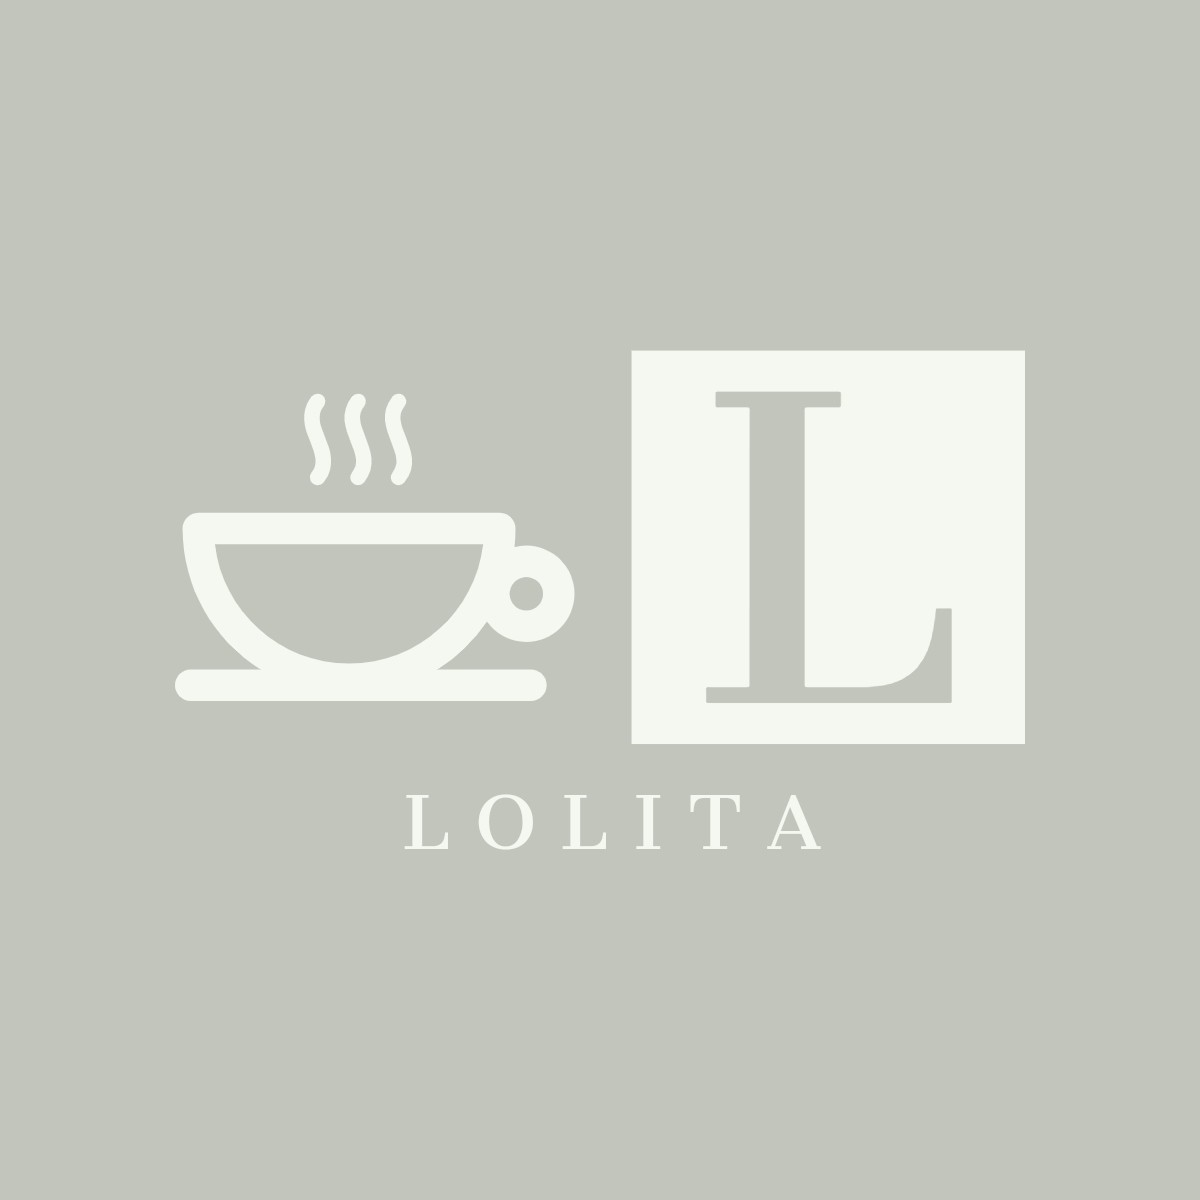 Lolita-logos___1_